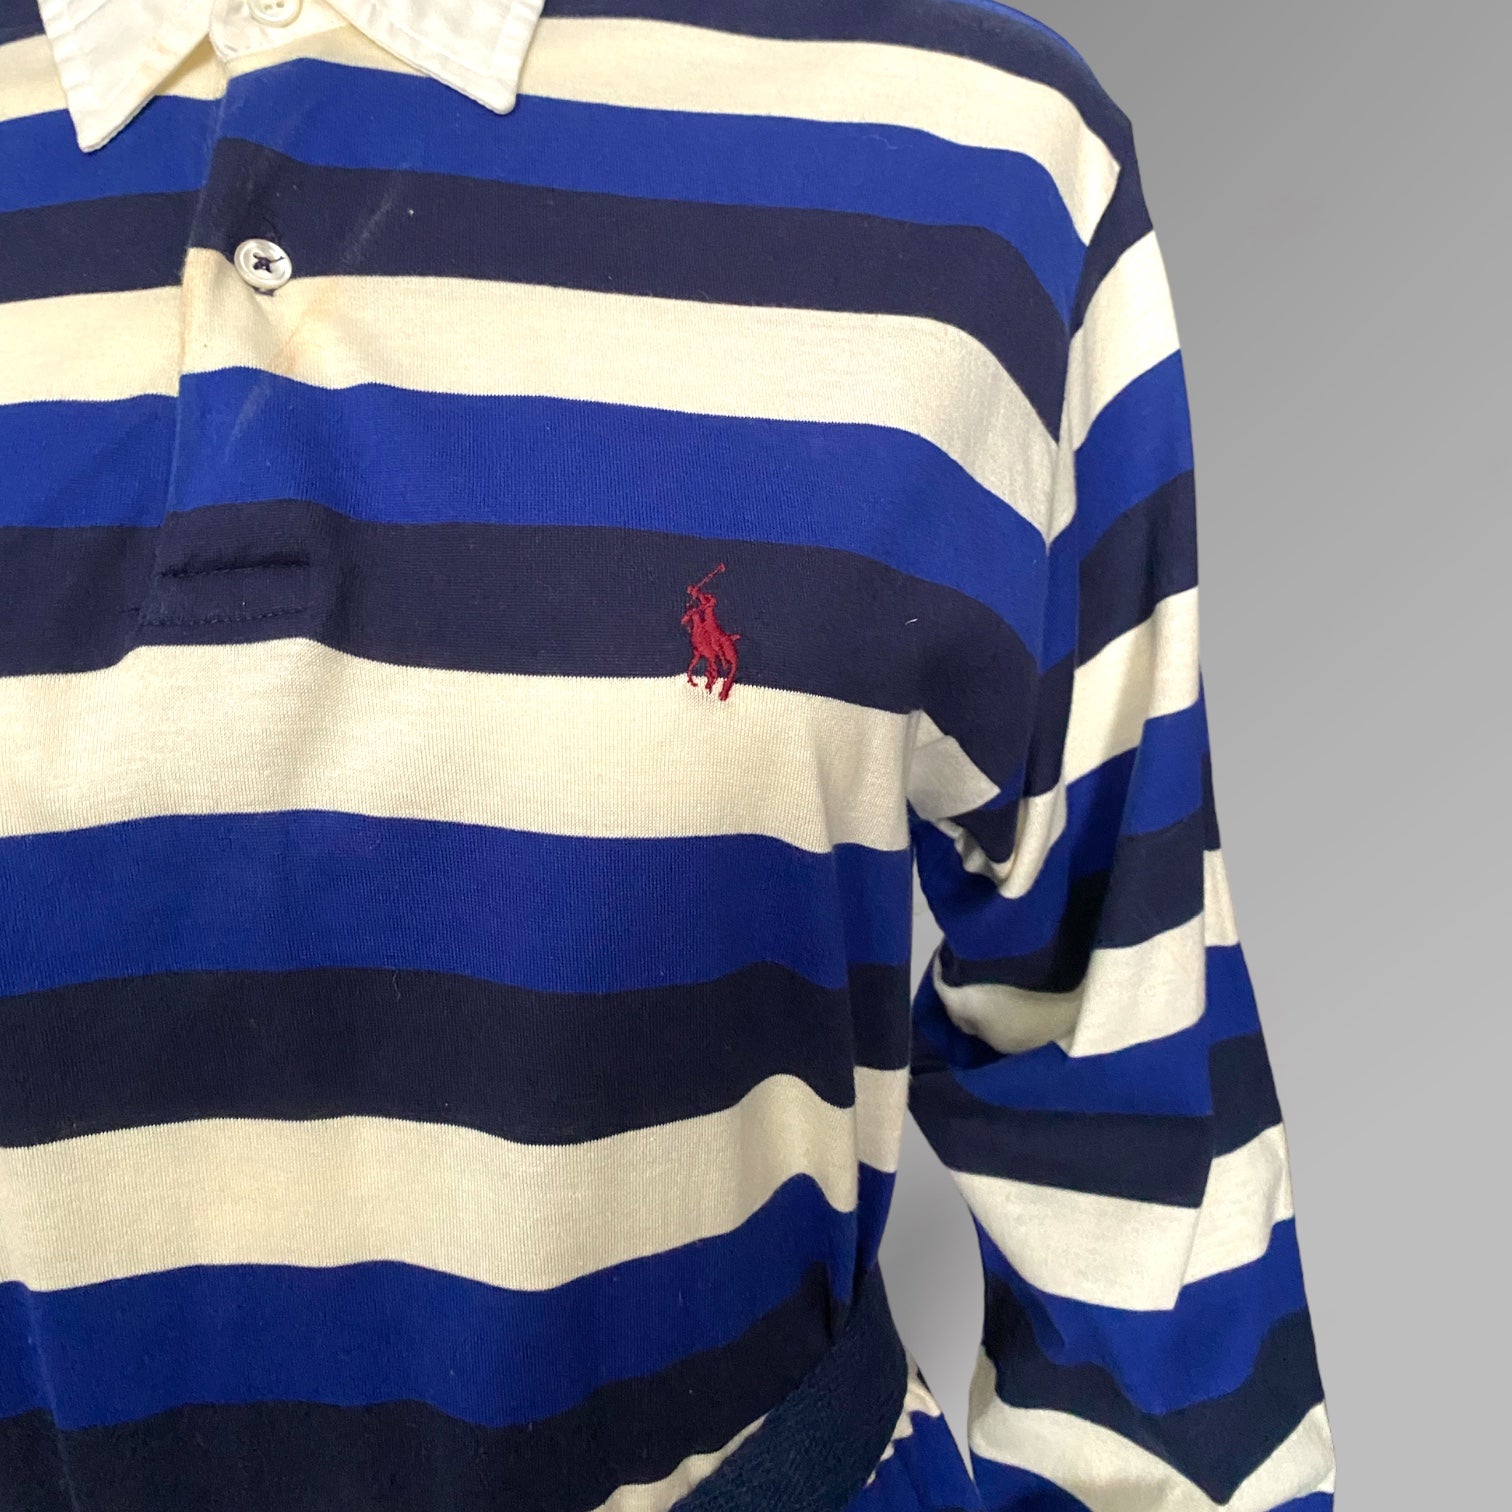 90s Polo Ralph Lauren Striped Henley Maxi Dress